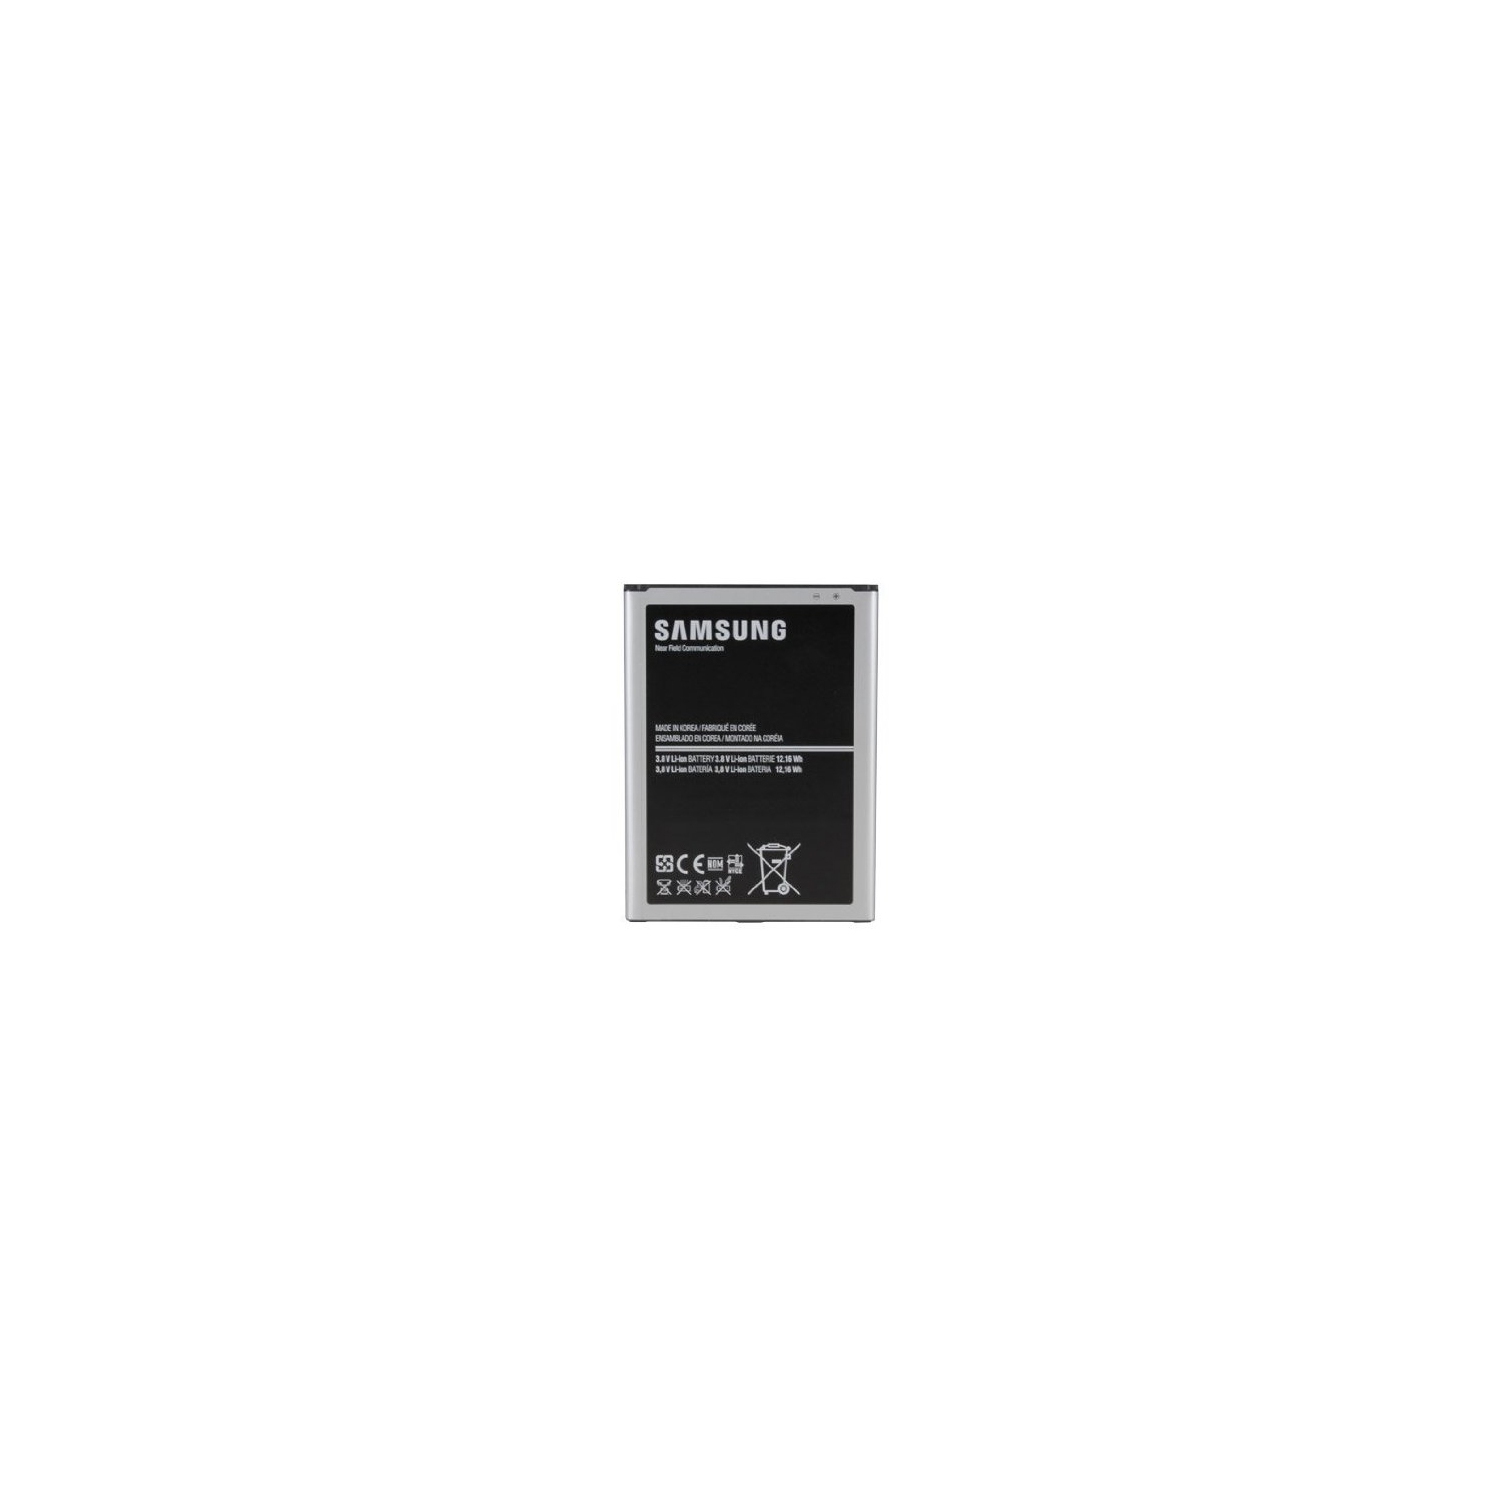 Samsung Galaxy Mega 6.3 i9200 Battery – B700BC